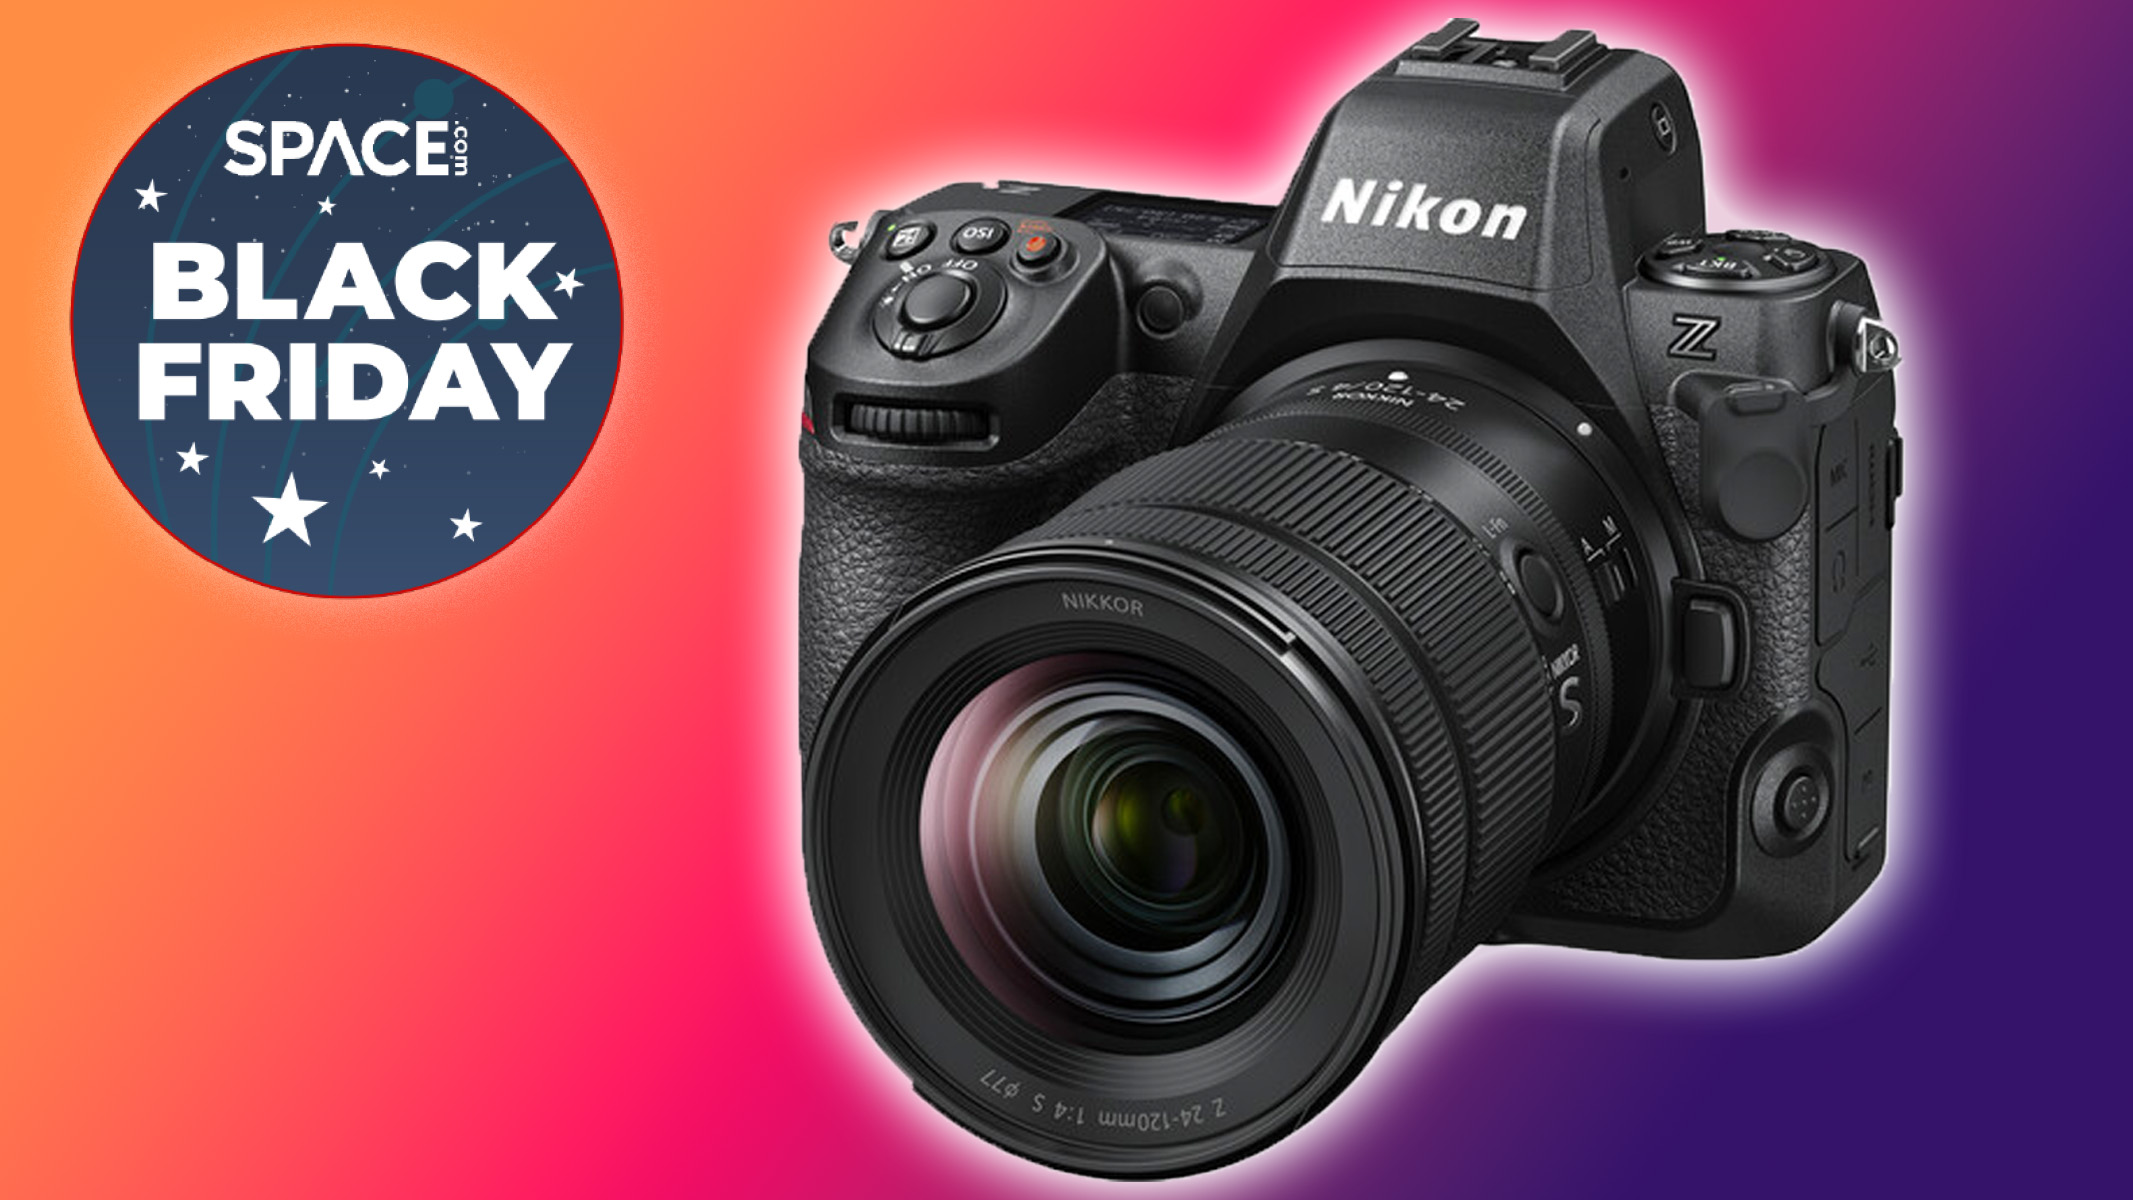 Nikon Z8 & lens bundle $200 off: Black Friday camera deal Space